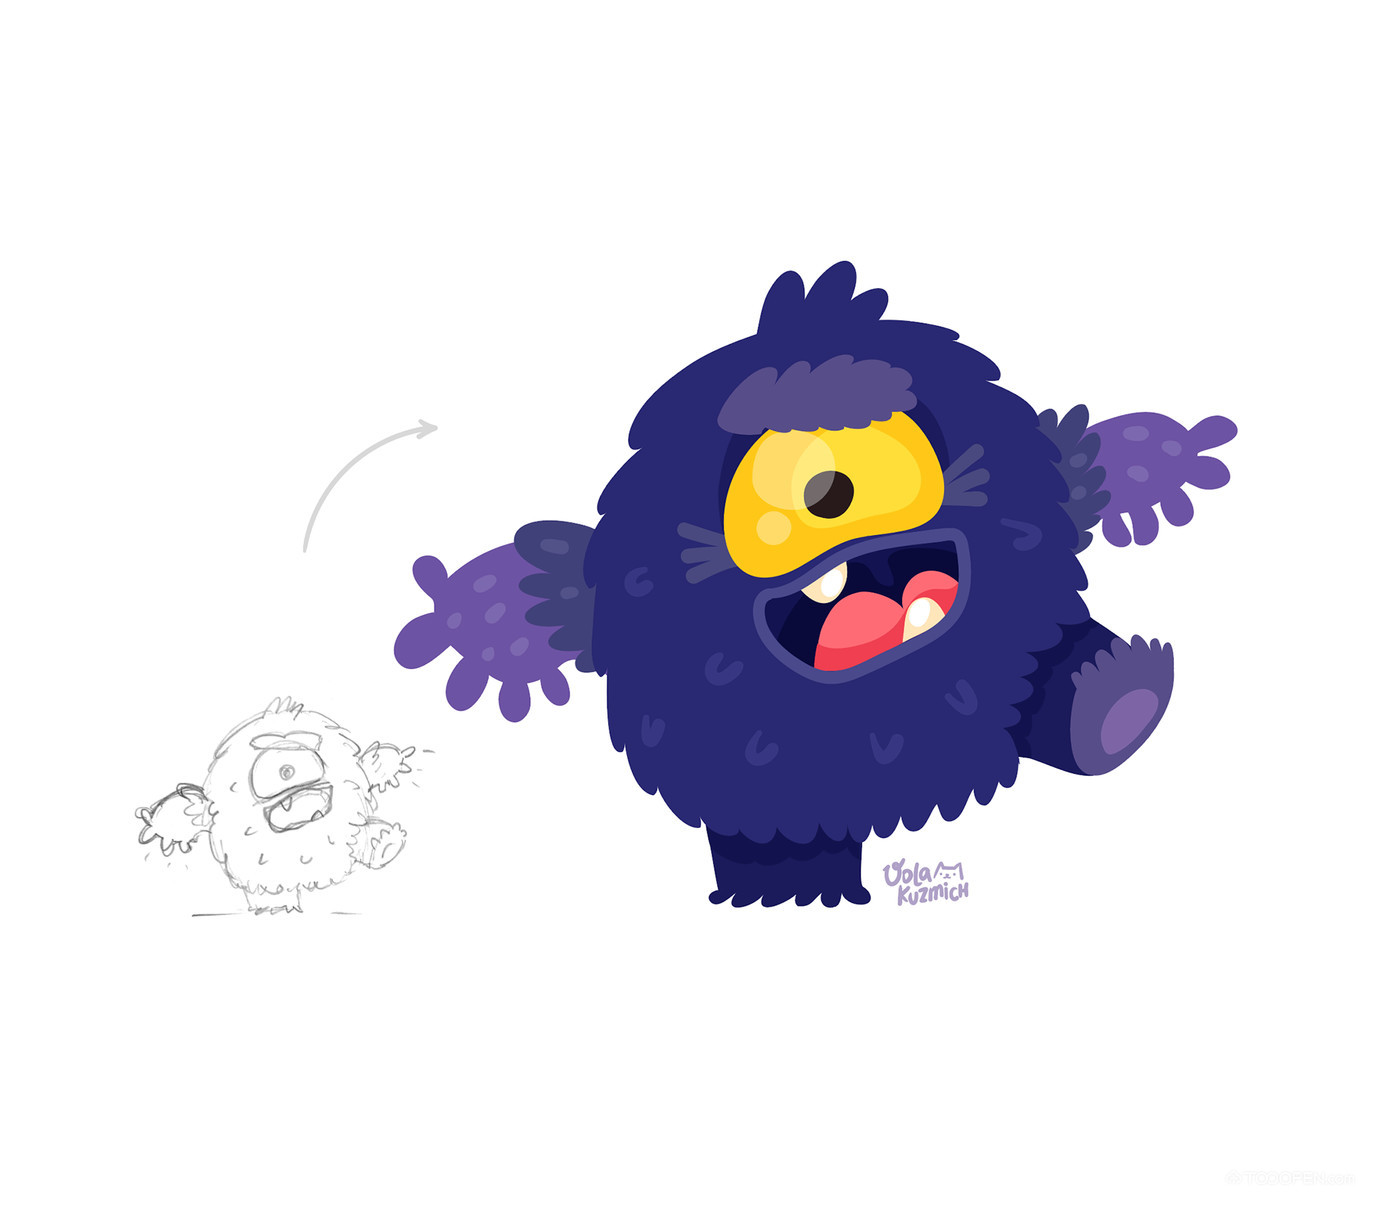 紫色毛茸茸的小怪物吉祥物设计欣赏-01